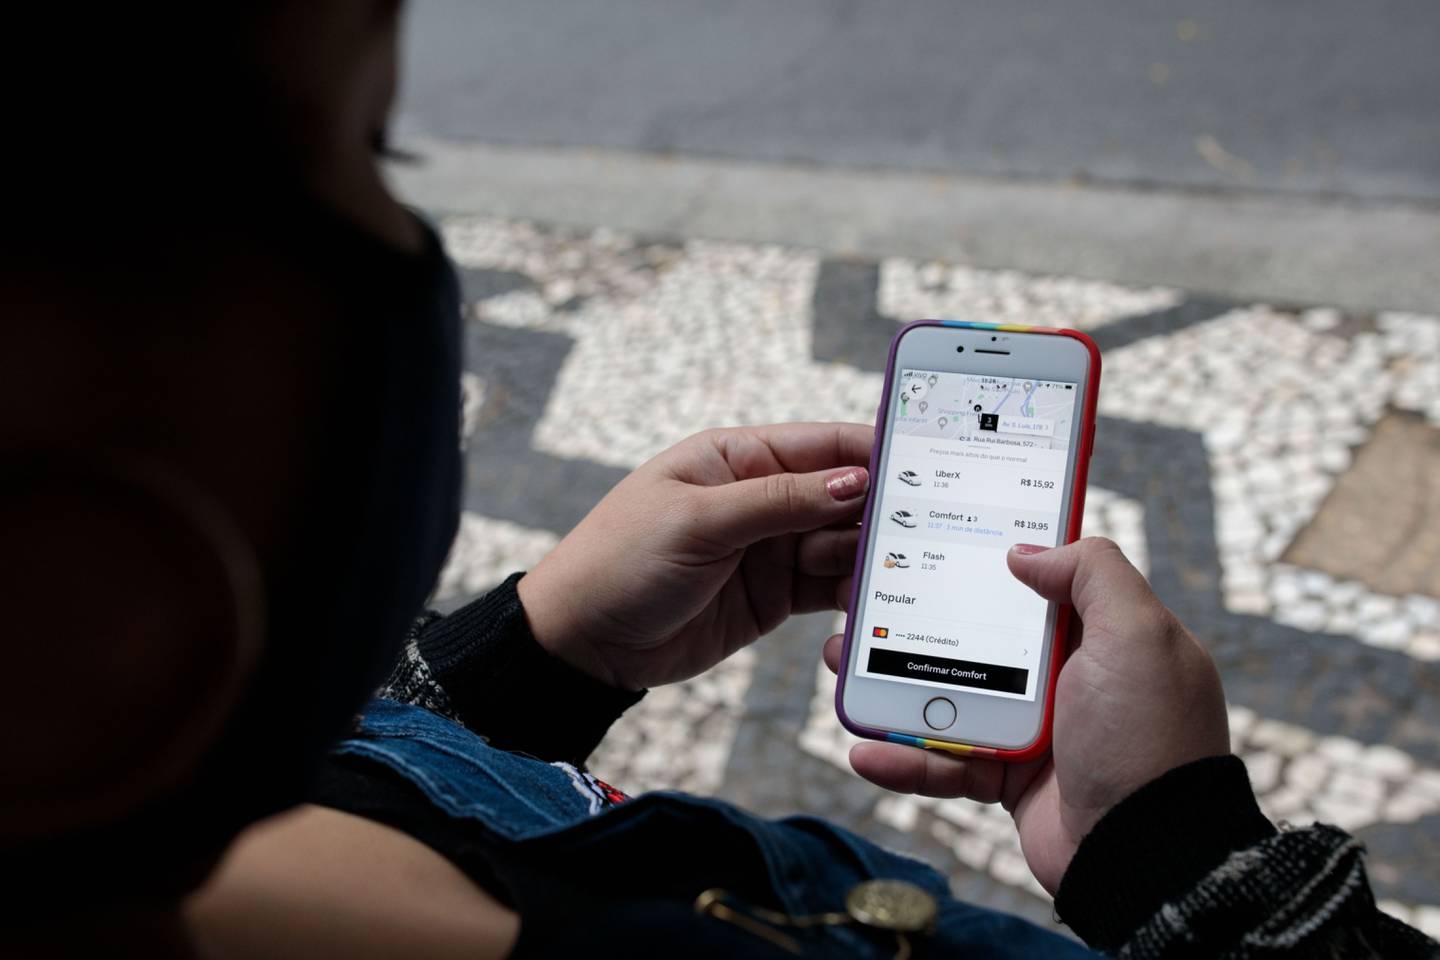 Uber incrementó 2.5% a la tarifa en República Dominicana